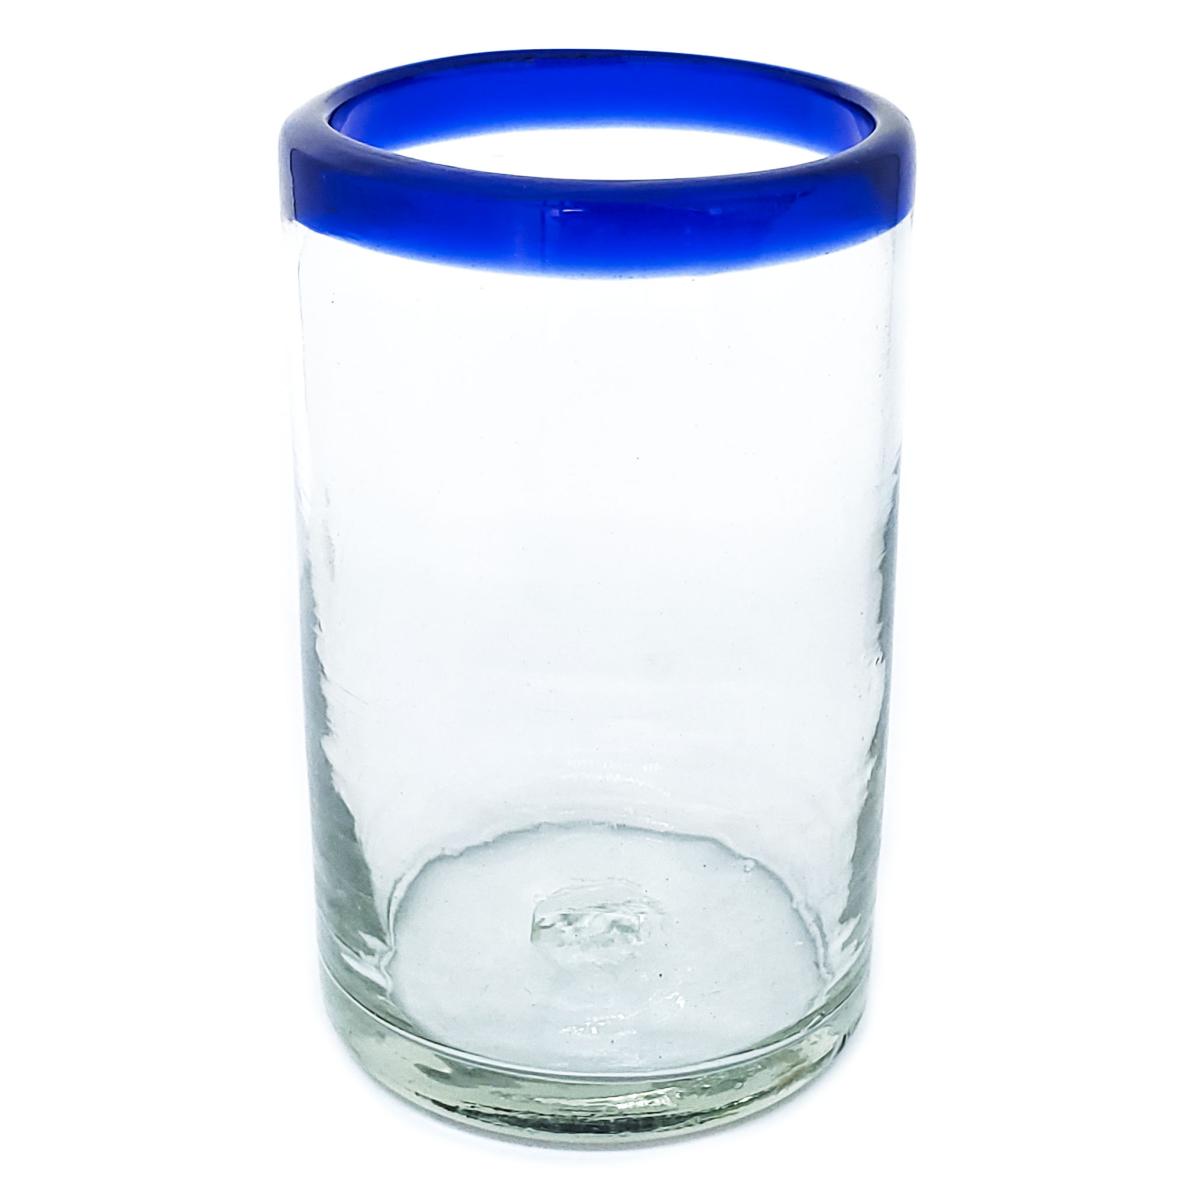 Ofertas / Juego de 6 vasos grandes con borde azul cobalto / Éstos artesanales vasos le darán un toque clásico a su bebida favorita.